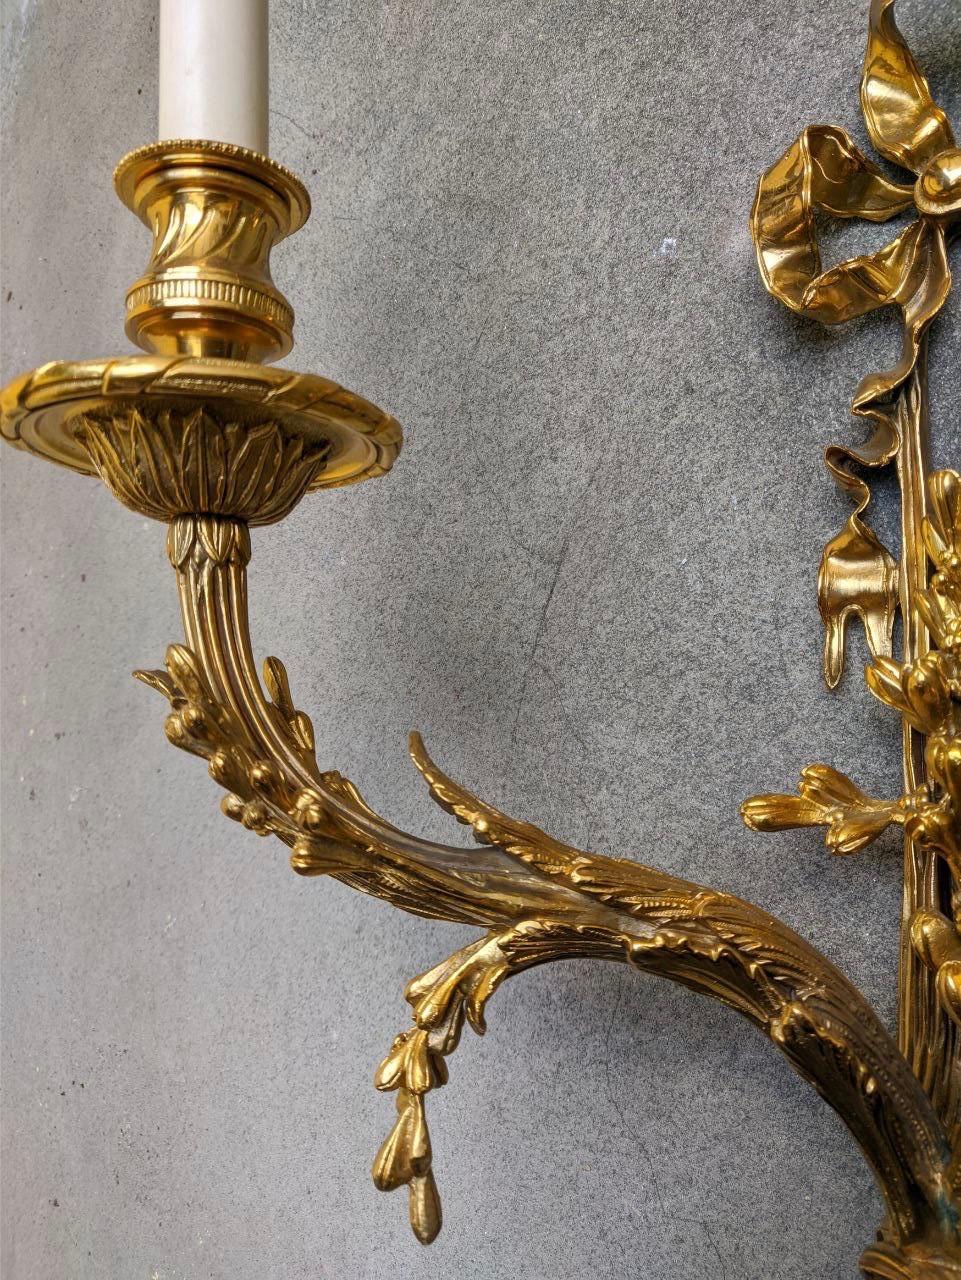 Dieser französische Wandleuchter im Directoire-Stil ist aus hochwertiger ziselierter Bronze gefertigt und weist zahlreiche lebendige Details auf, die für das Ende des 18. Jahrhunderts typisch sind. Oben befindet sich eine Heftklammer, ein typisches